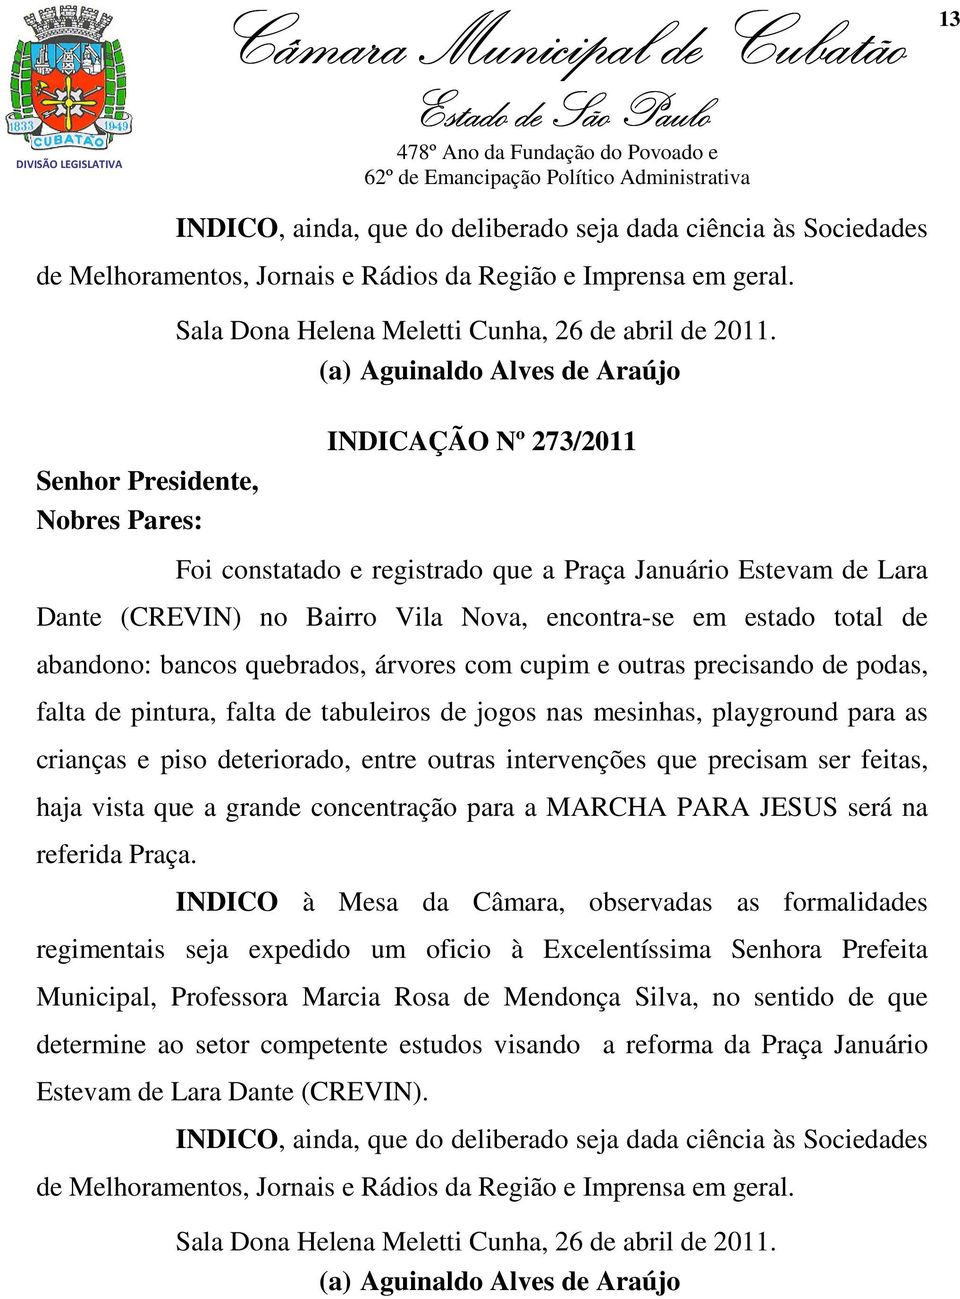 (a) Aguinaldo Alves de Araújo INDICAÇÃO Nº 273/2011 Foi constatado e registrado que a Praça Januário Estevam de Lara Dante (CREVIN) no Bairro Vila Nova, encontra-se em estado total de abandono: